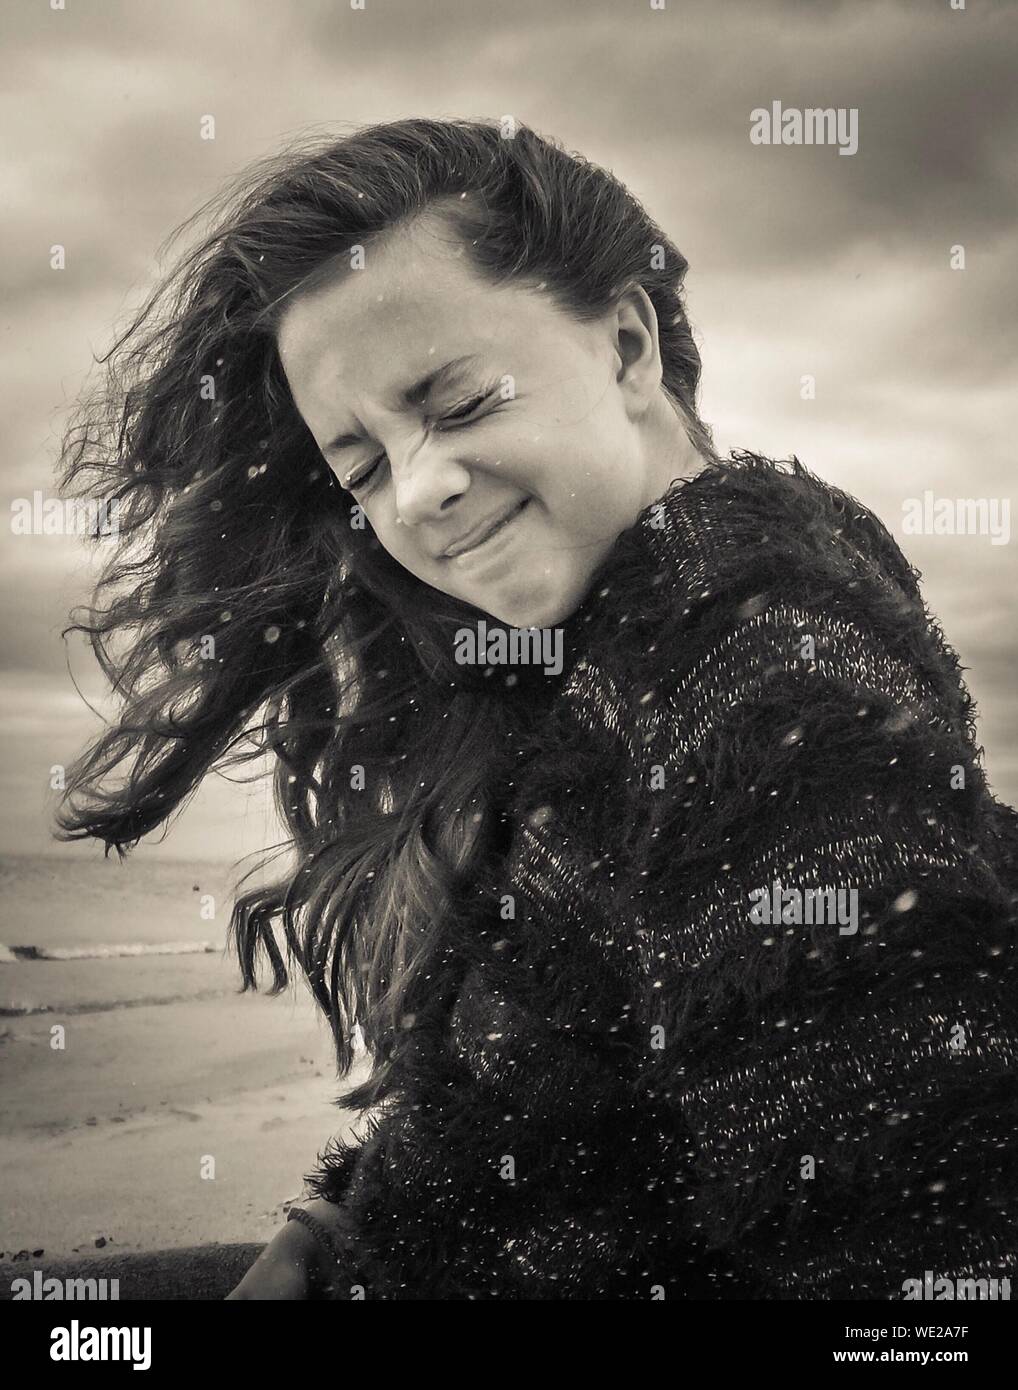 Mujer joven con los ojos cerrados en la playa durante el viento Foto de stock